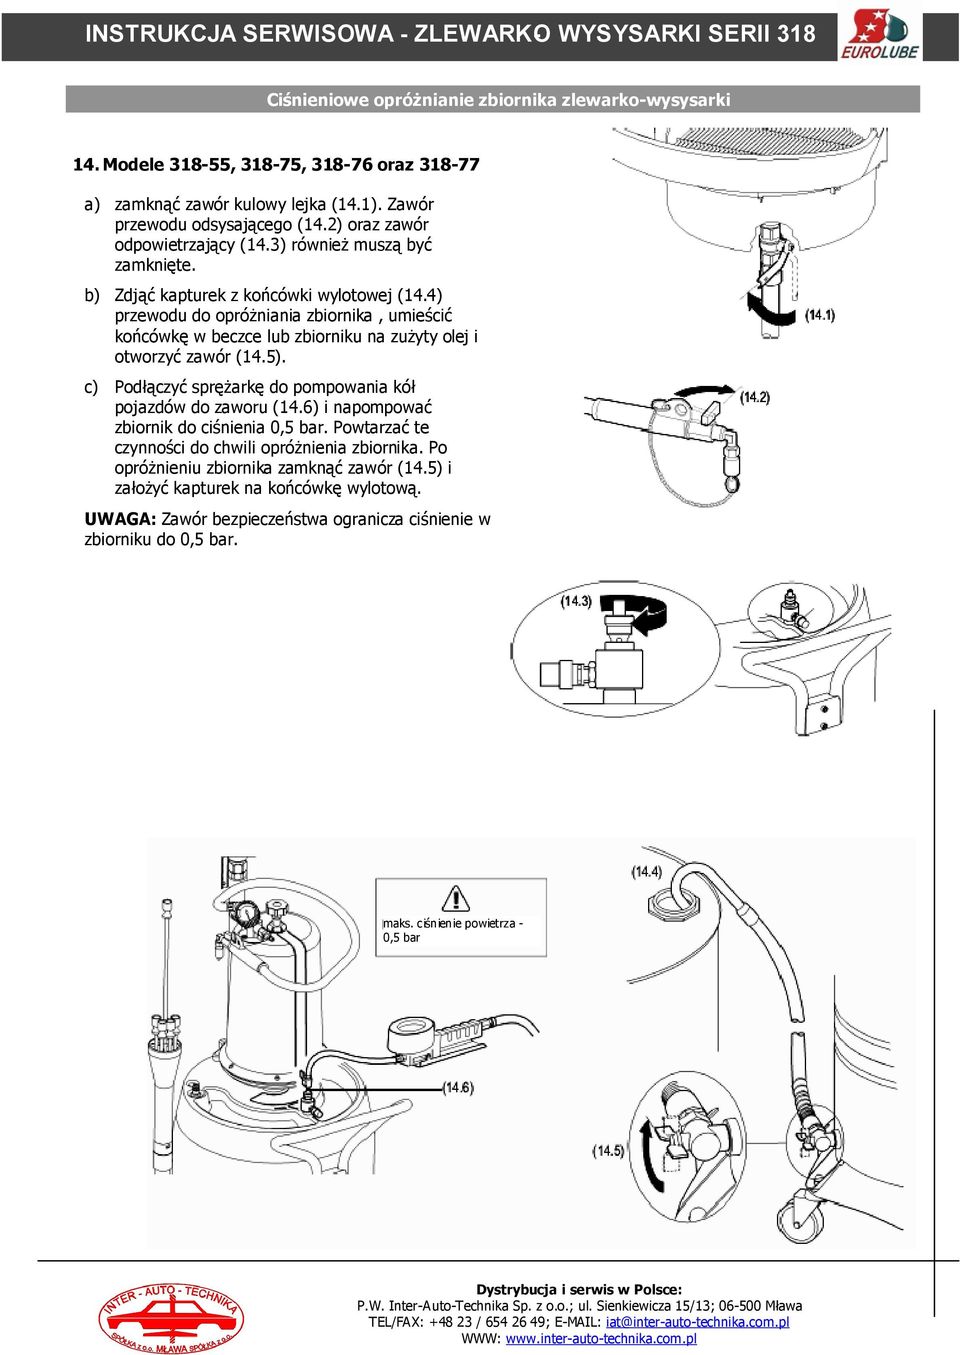 4) przewodu do opróżniania zbiornika, umieścić końcówkę w beczce lub zbiorniku na zużyty olej i otworzyć zawór (14.5). c) Podłączyć sprężarkę do pompowania kół pojazdów do zaworu (14.